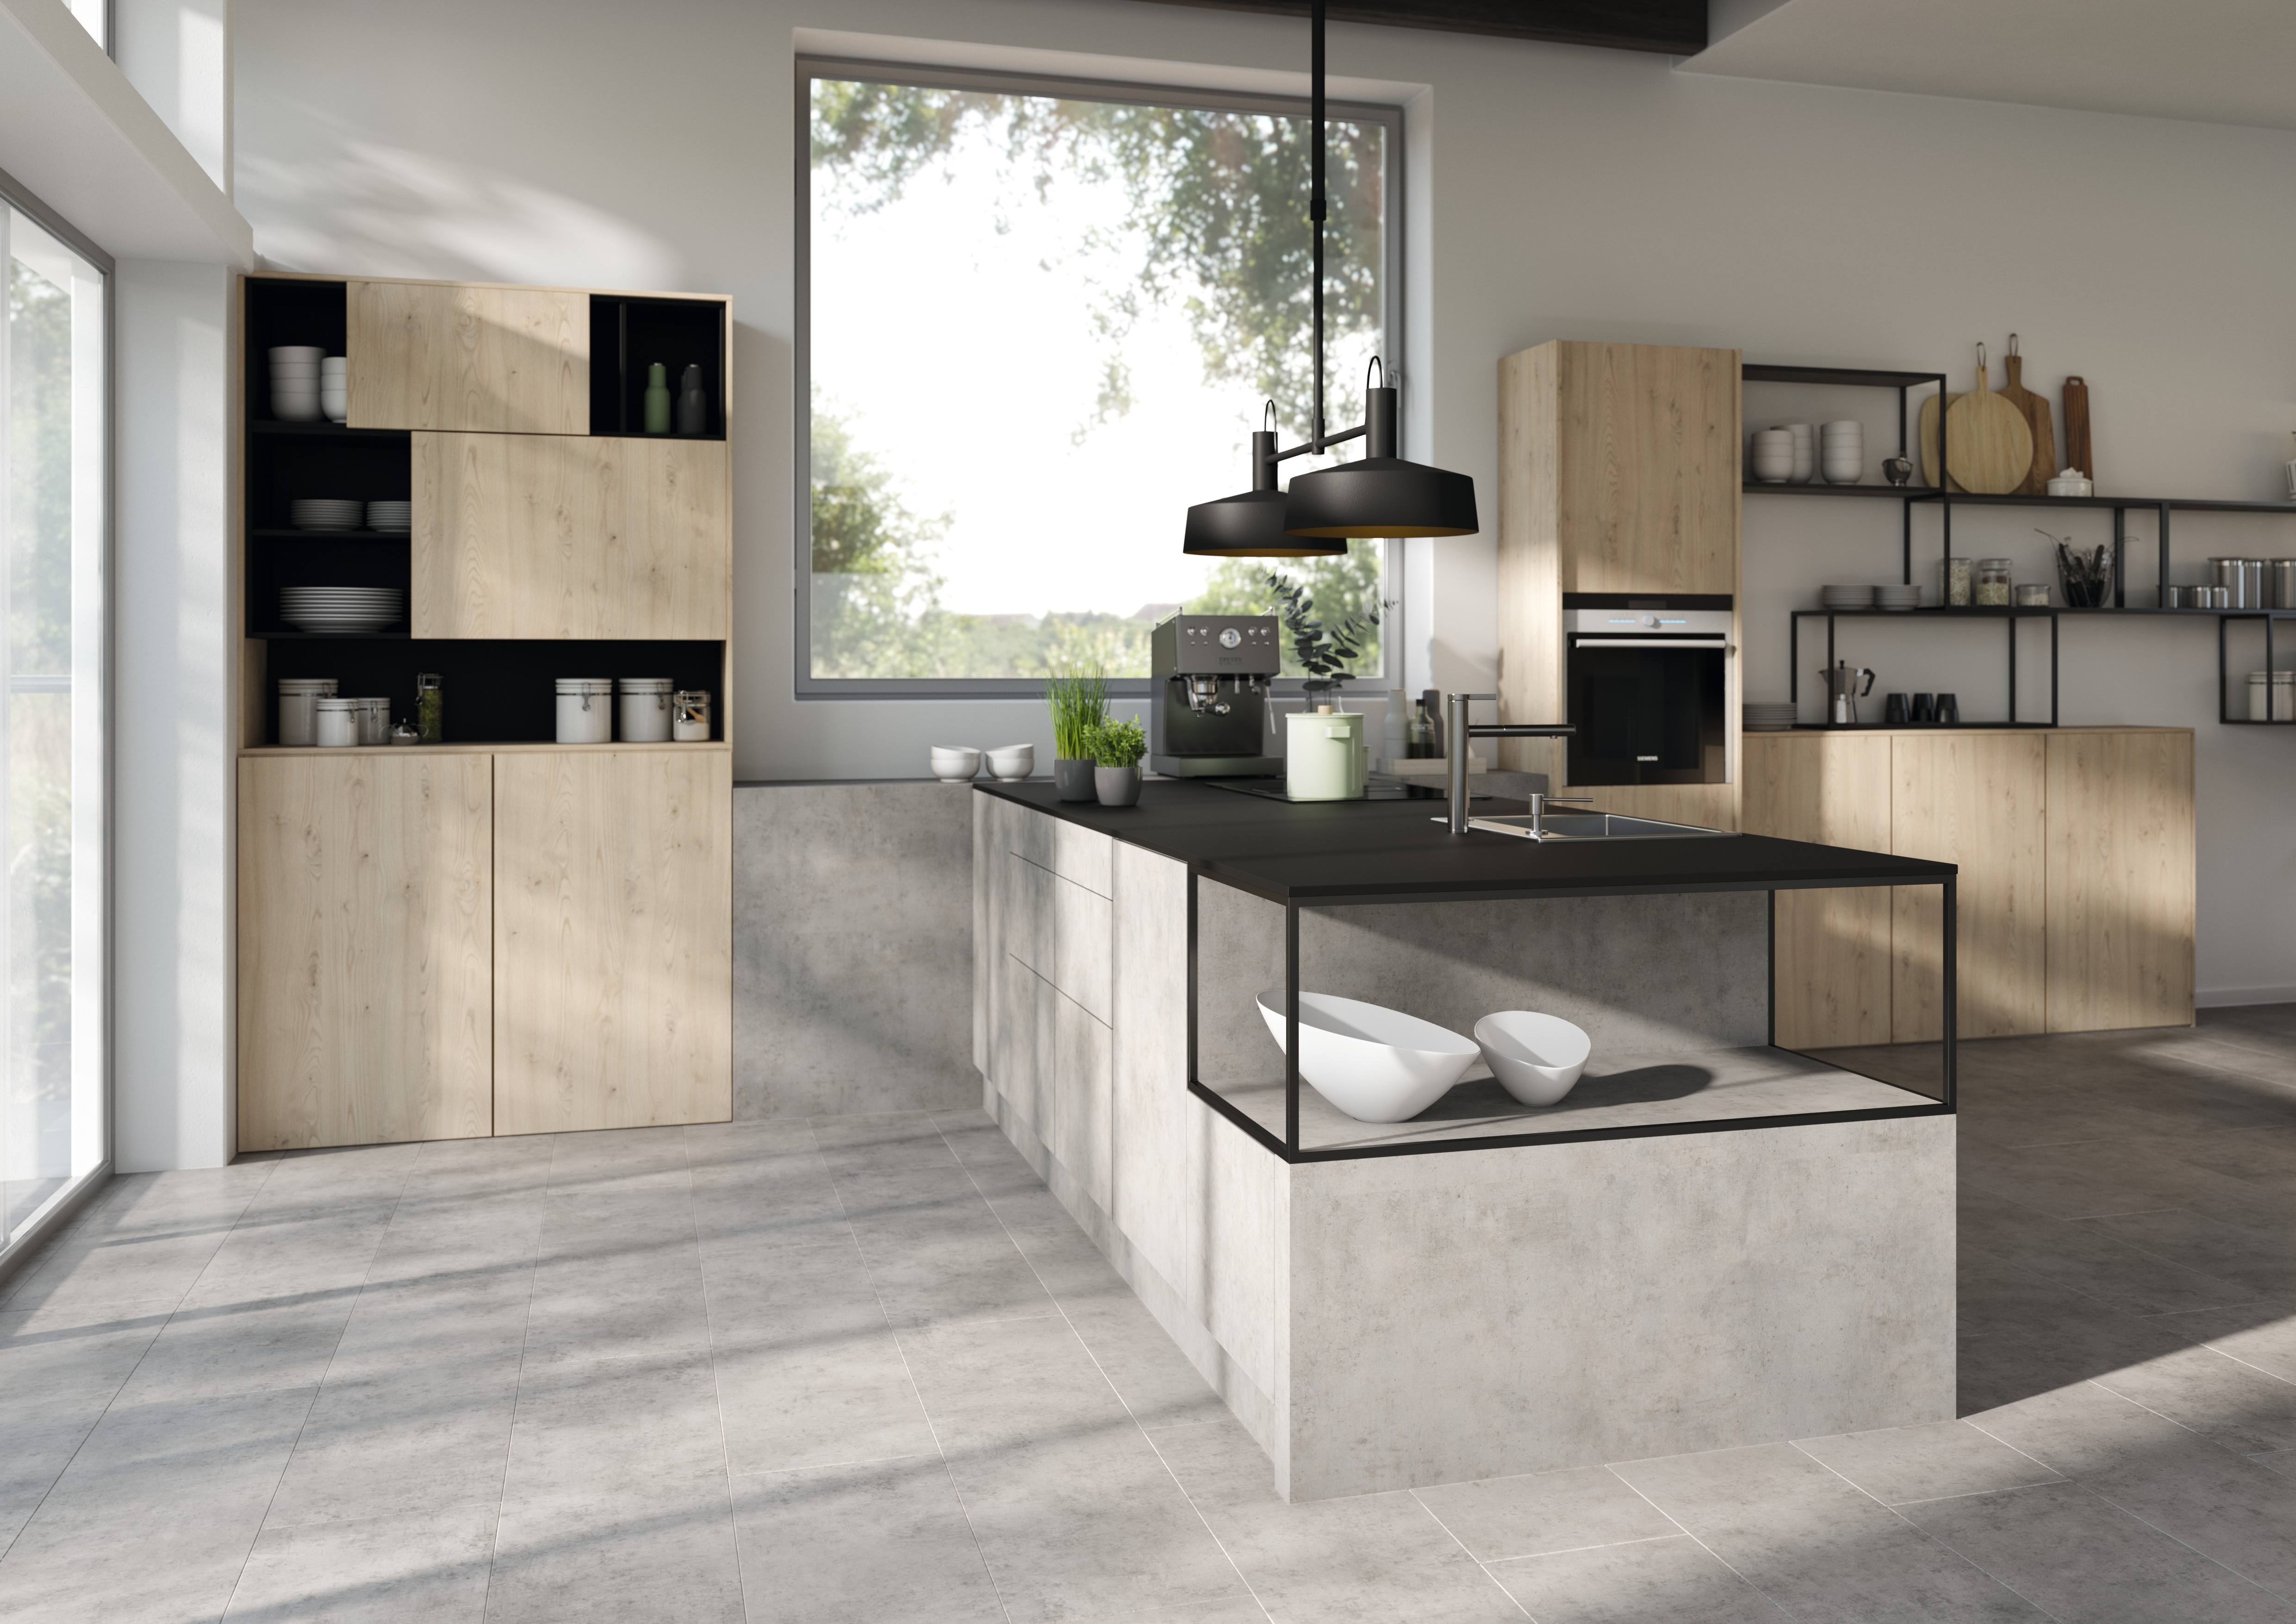 花色匹配的厨房：浅灰芝加哥水泥柜子正面：Eurodekor 双饰面板 | 地板：Aqua+ 强化木地板